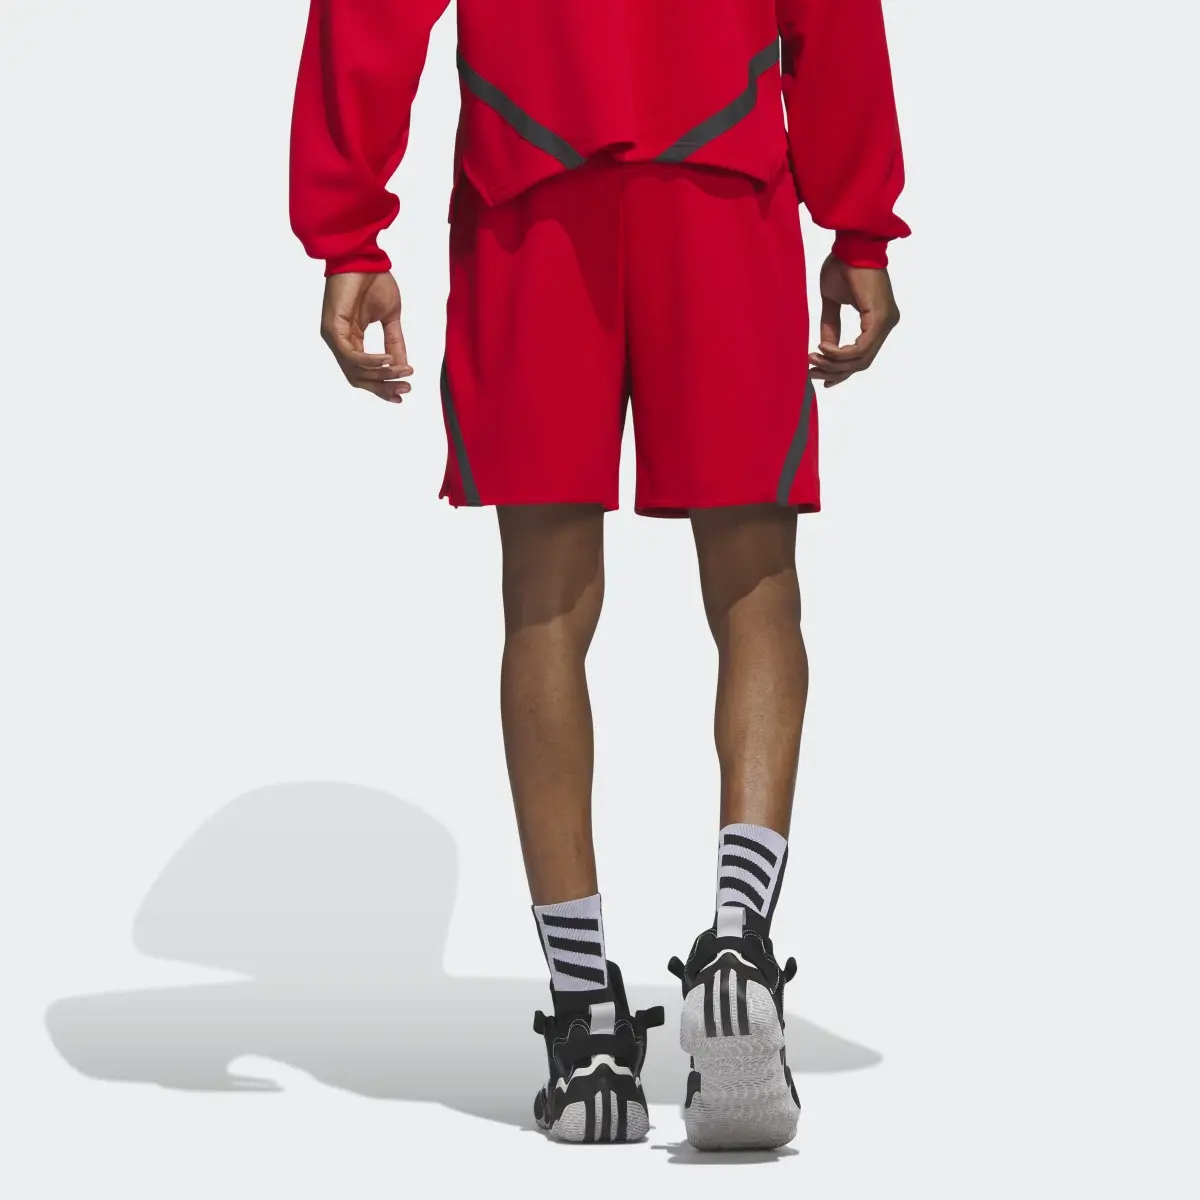 Adidas Select Shorts. 2